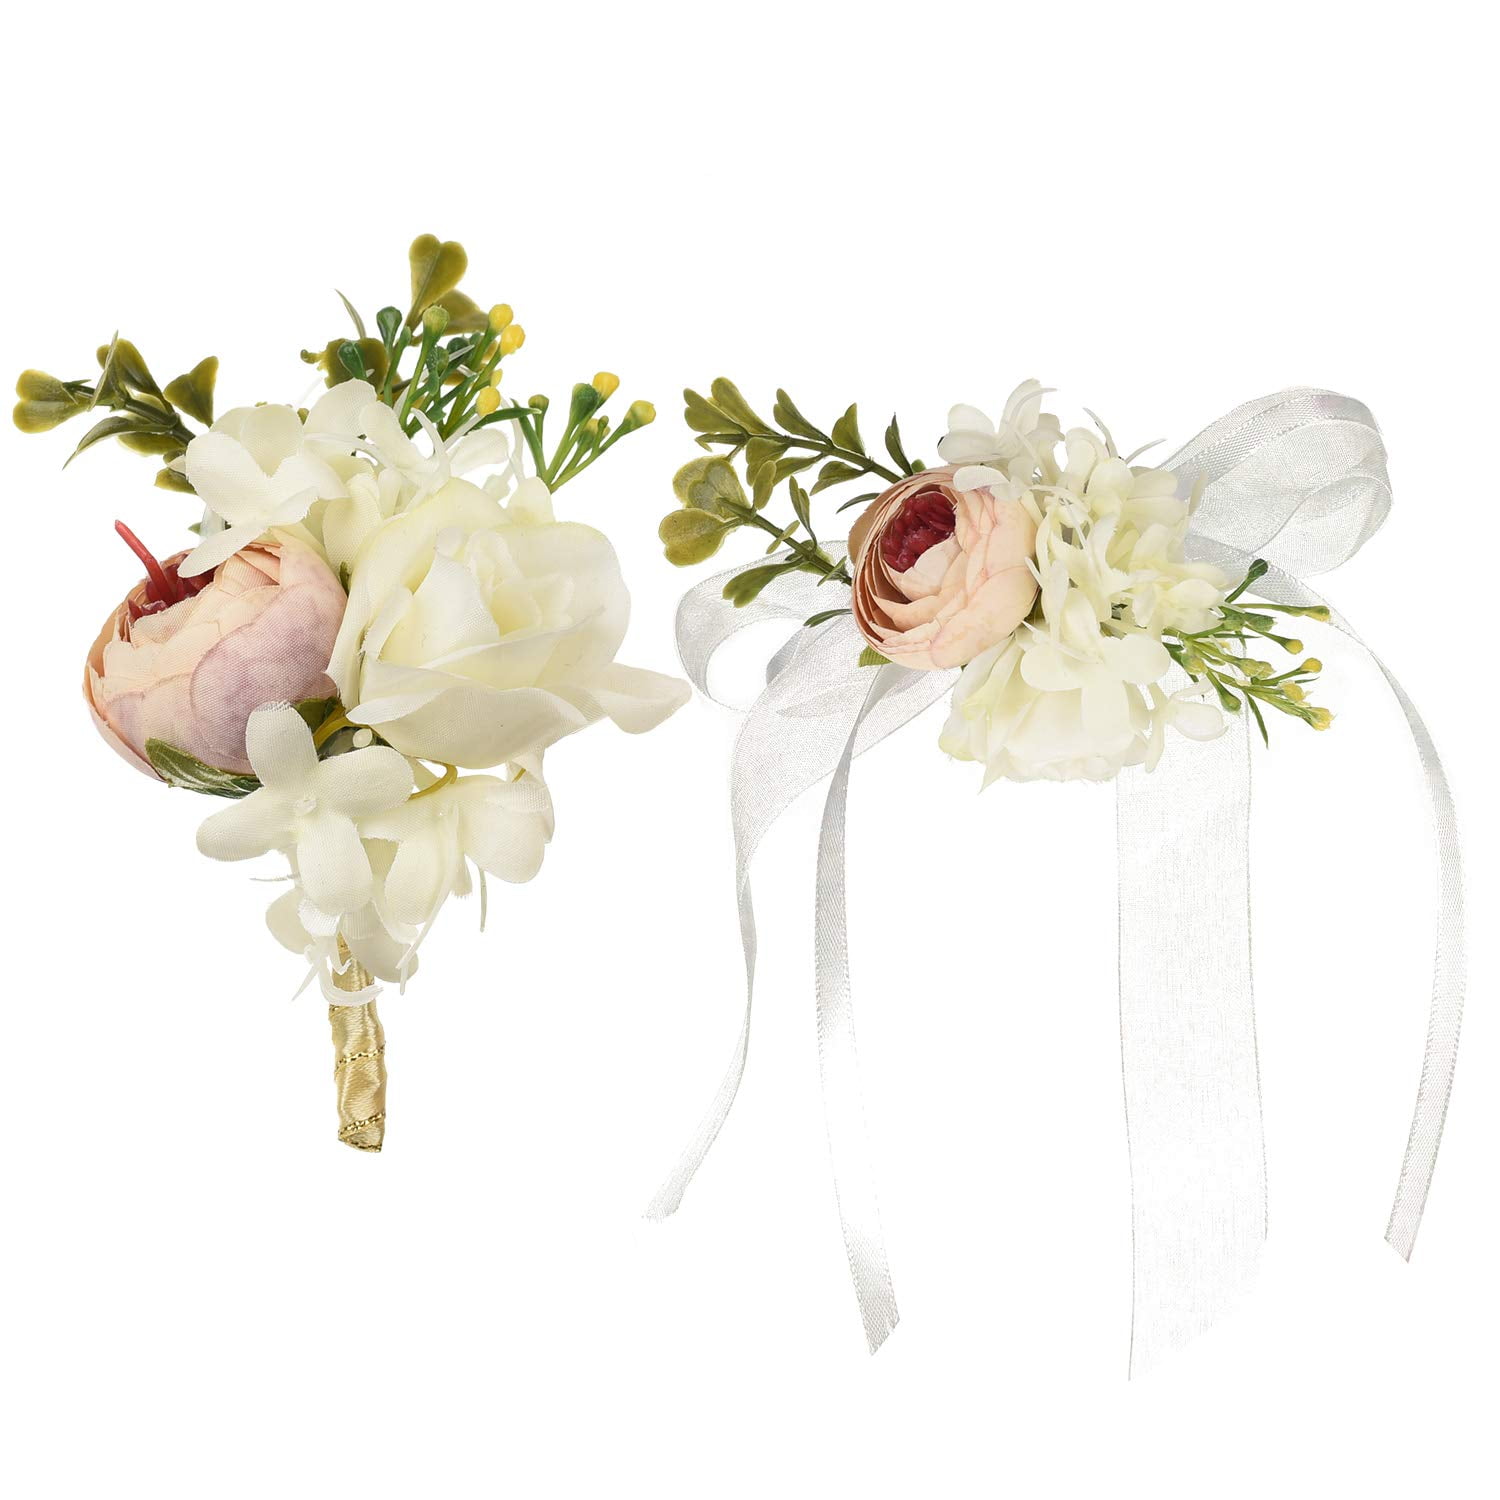 Wrist corsage proms Double buttonhole for wedding Wedding CORSAGE buttonhole 